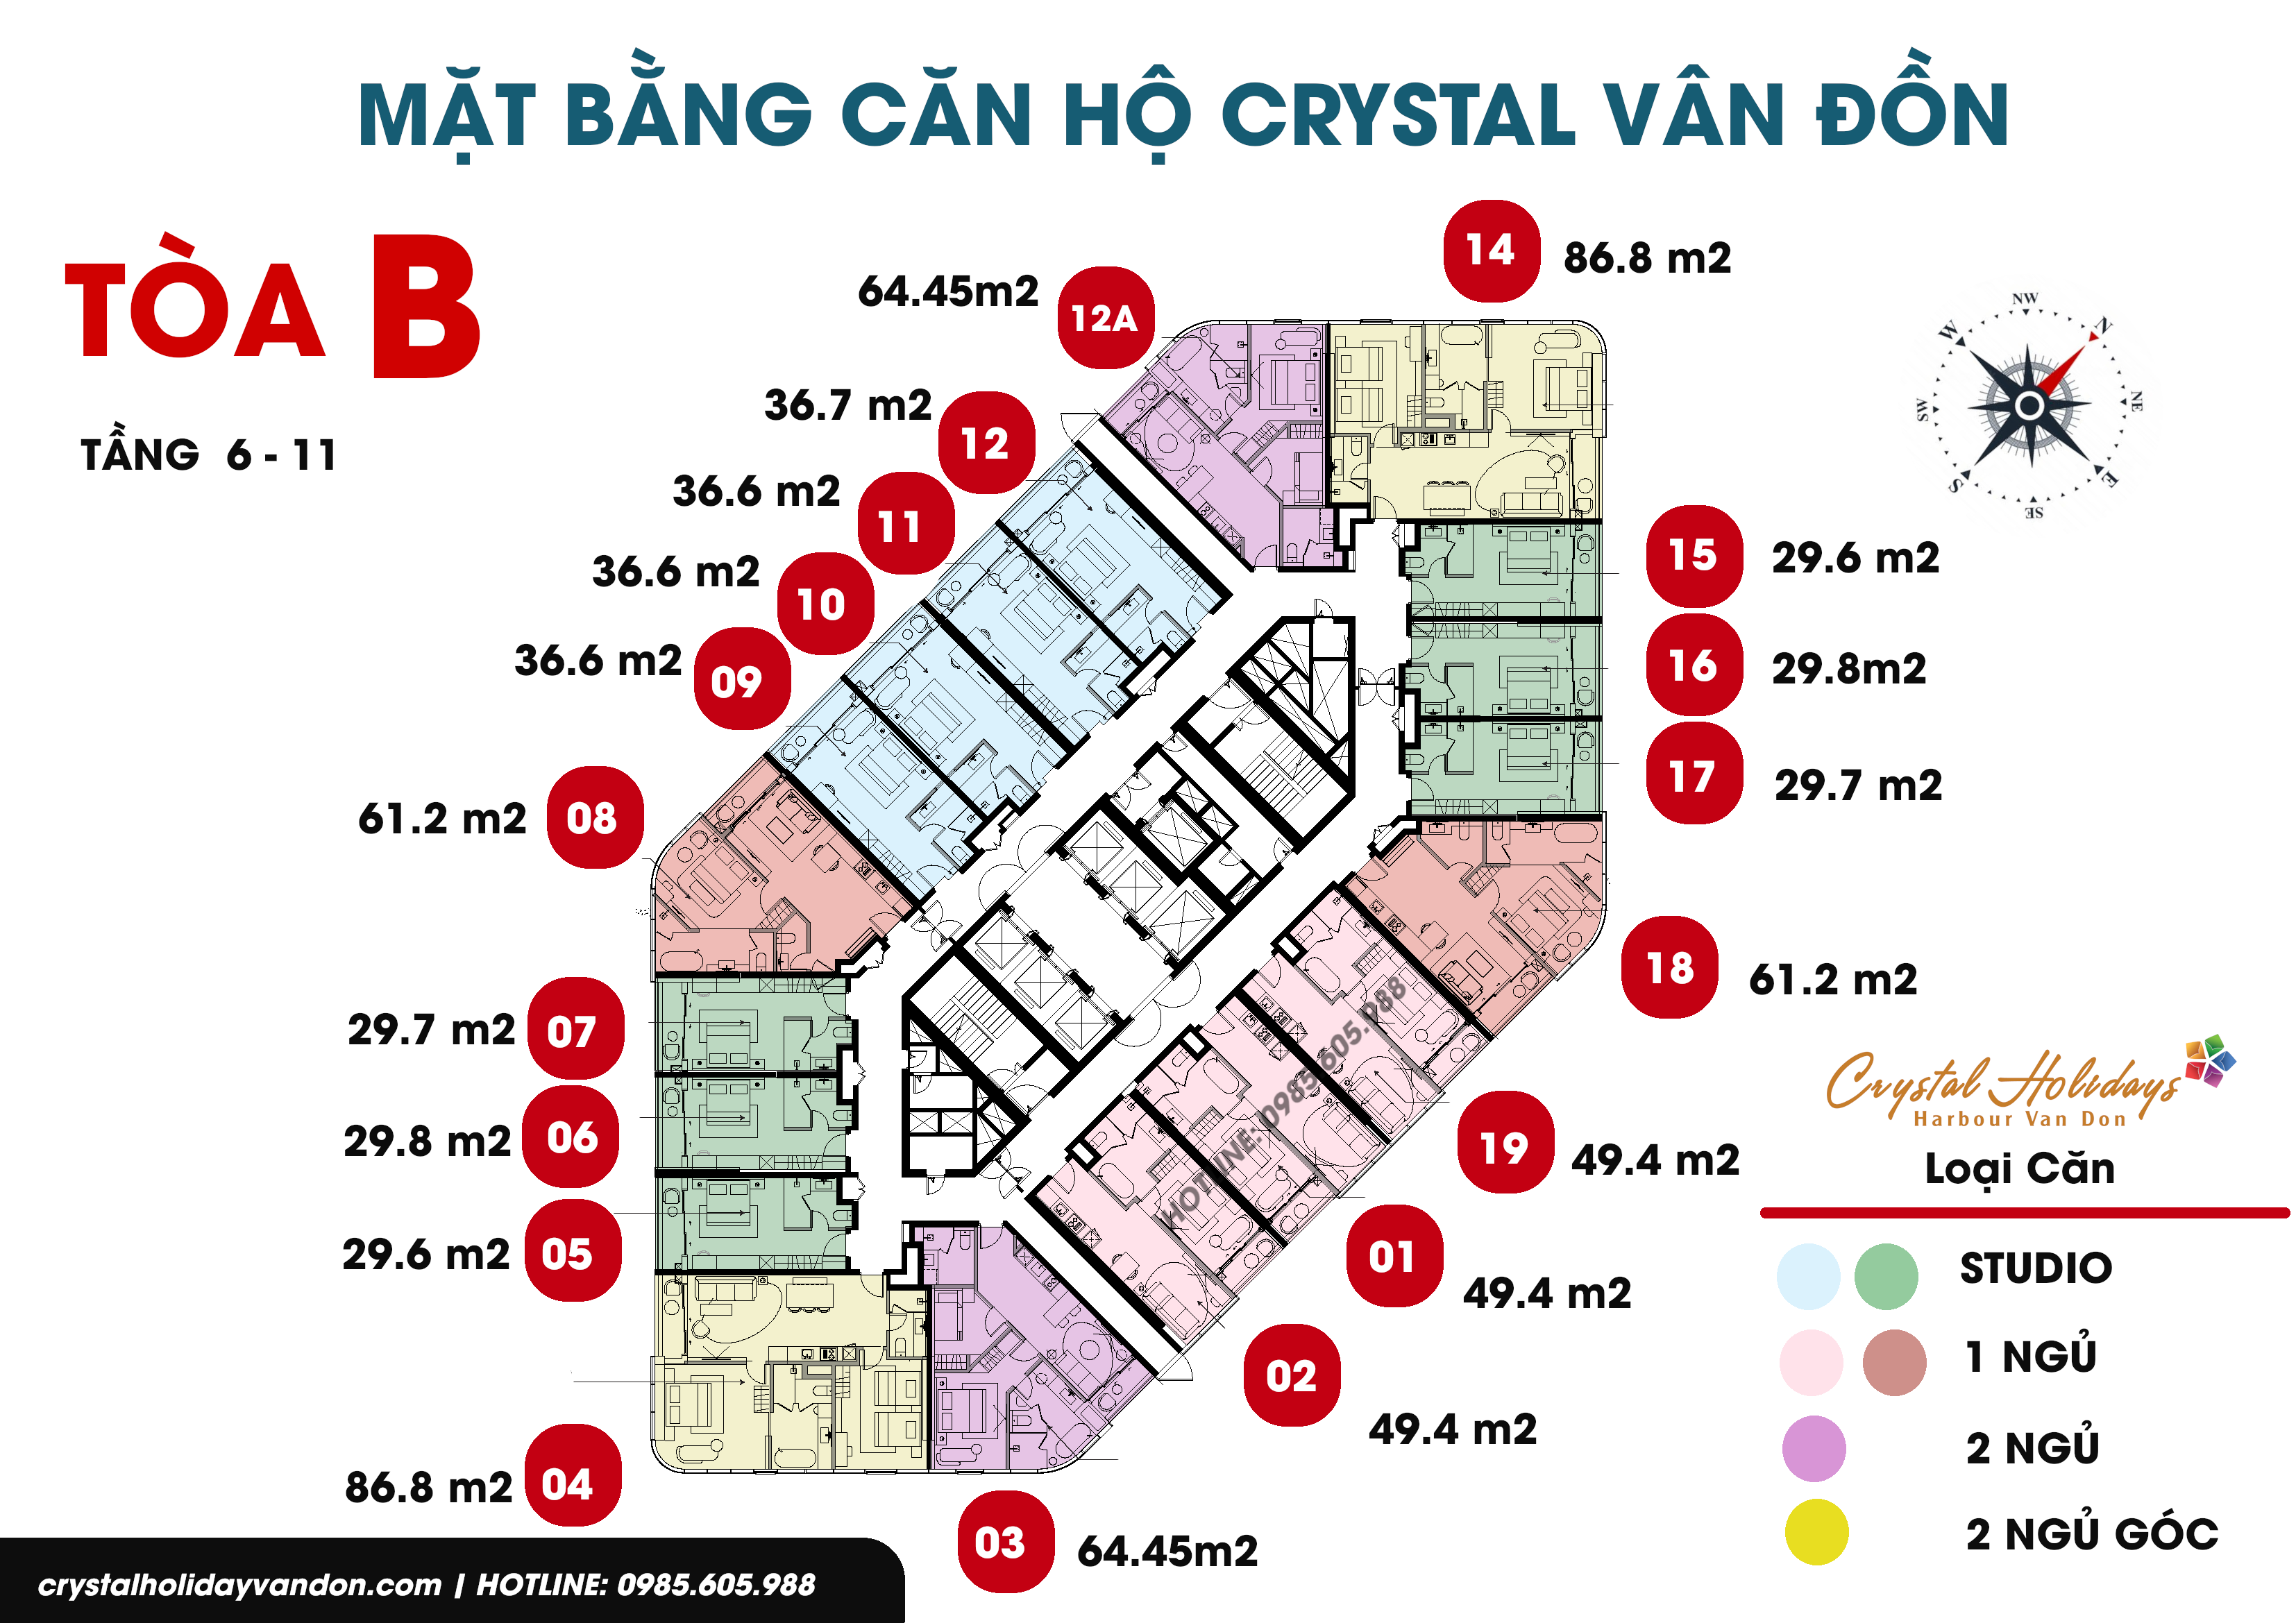 Mặt bằng căn hộ Crystal Vân Đồn Tòa B, Tầng 6 - 11